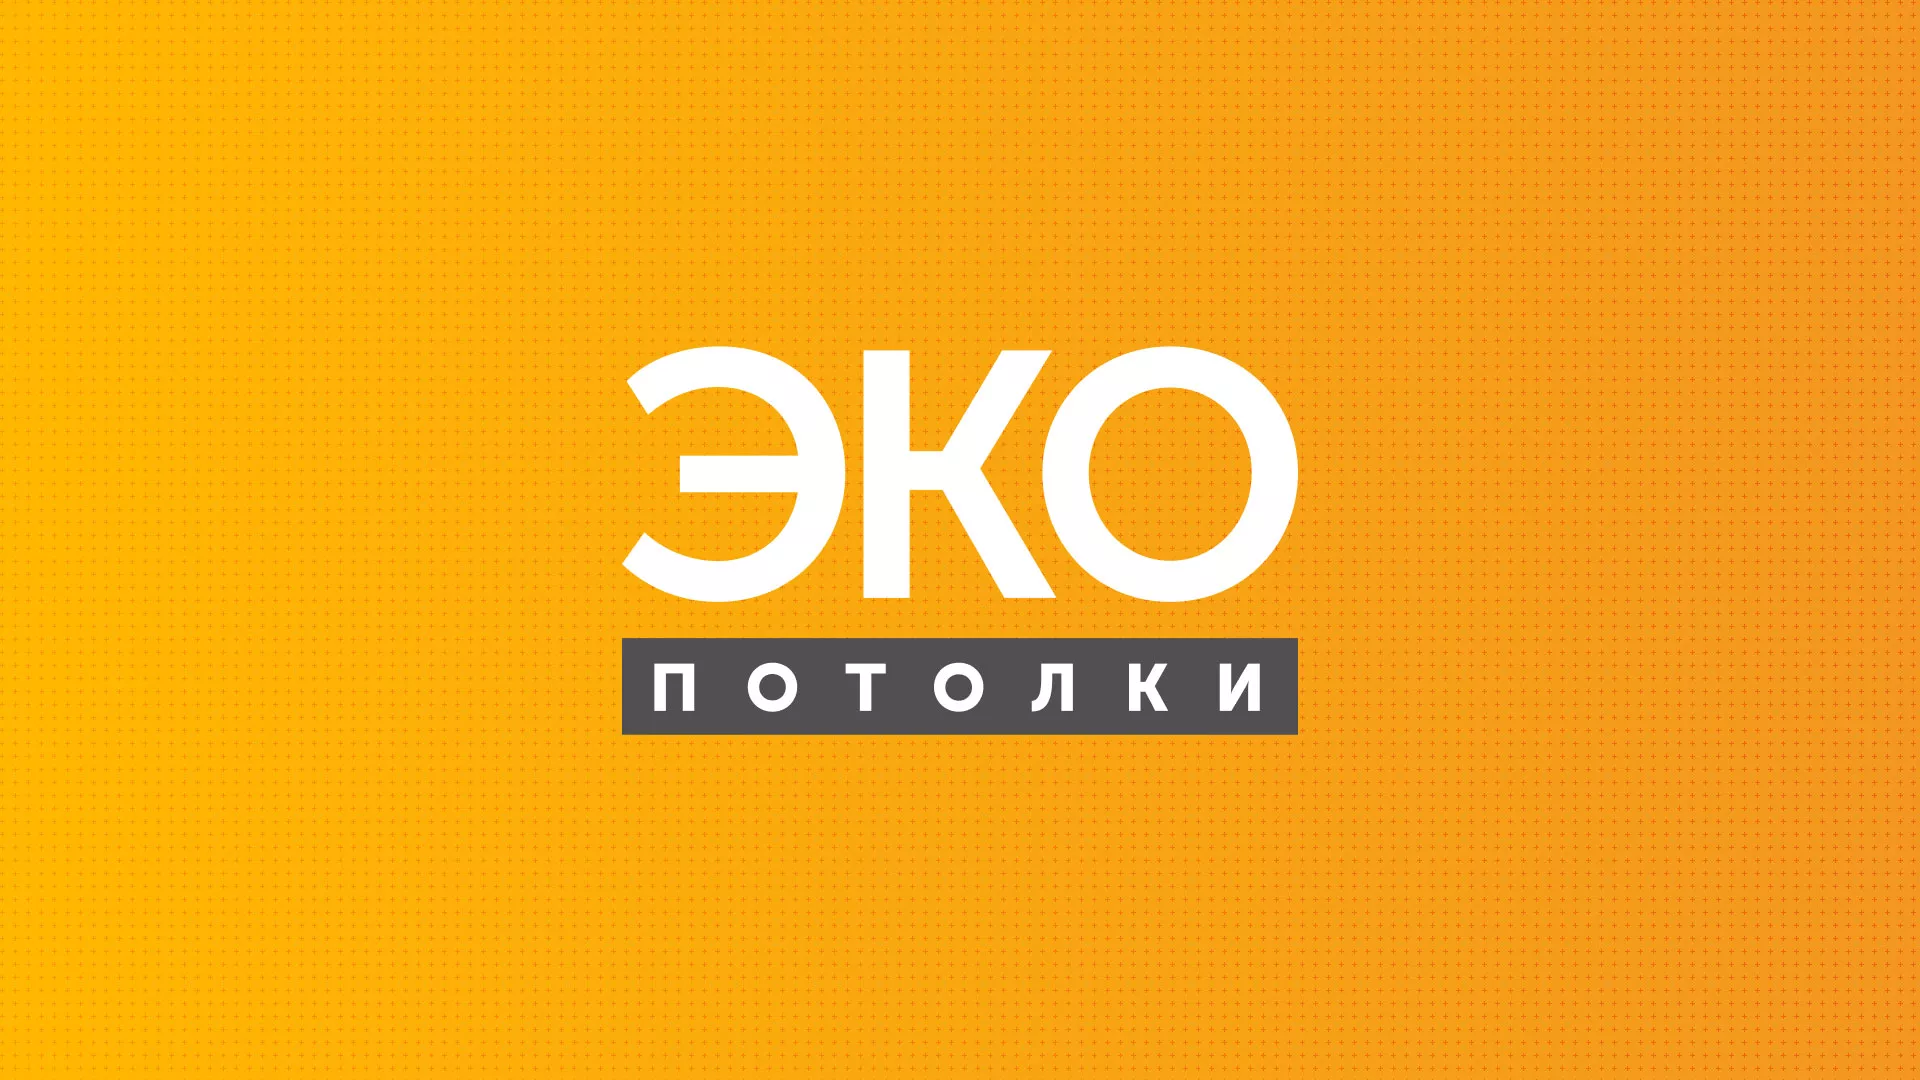 Разработка сайта по натяжным потолкам «Эко Потолки» в Болохово